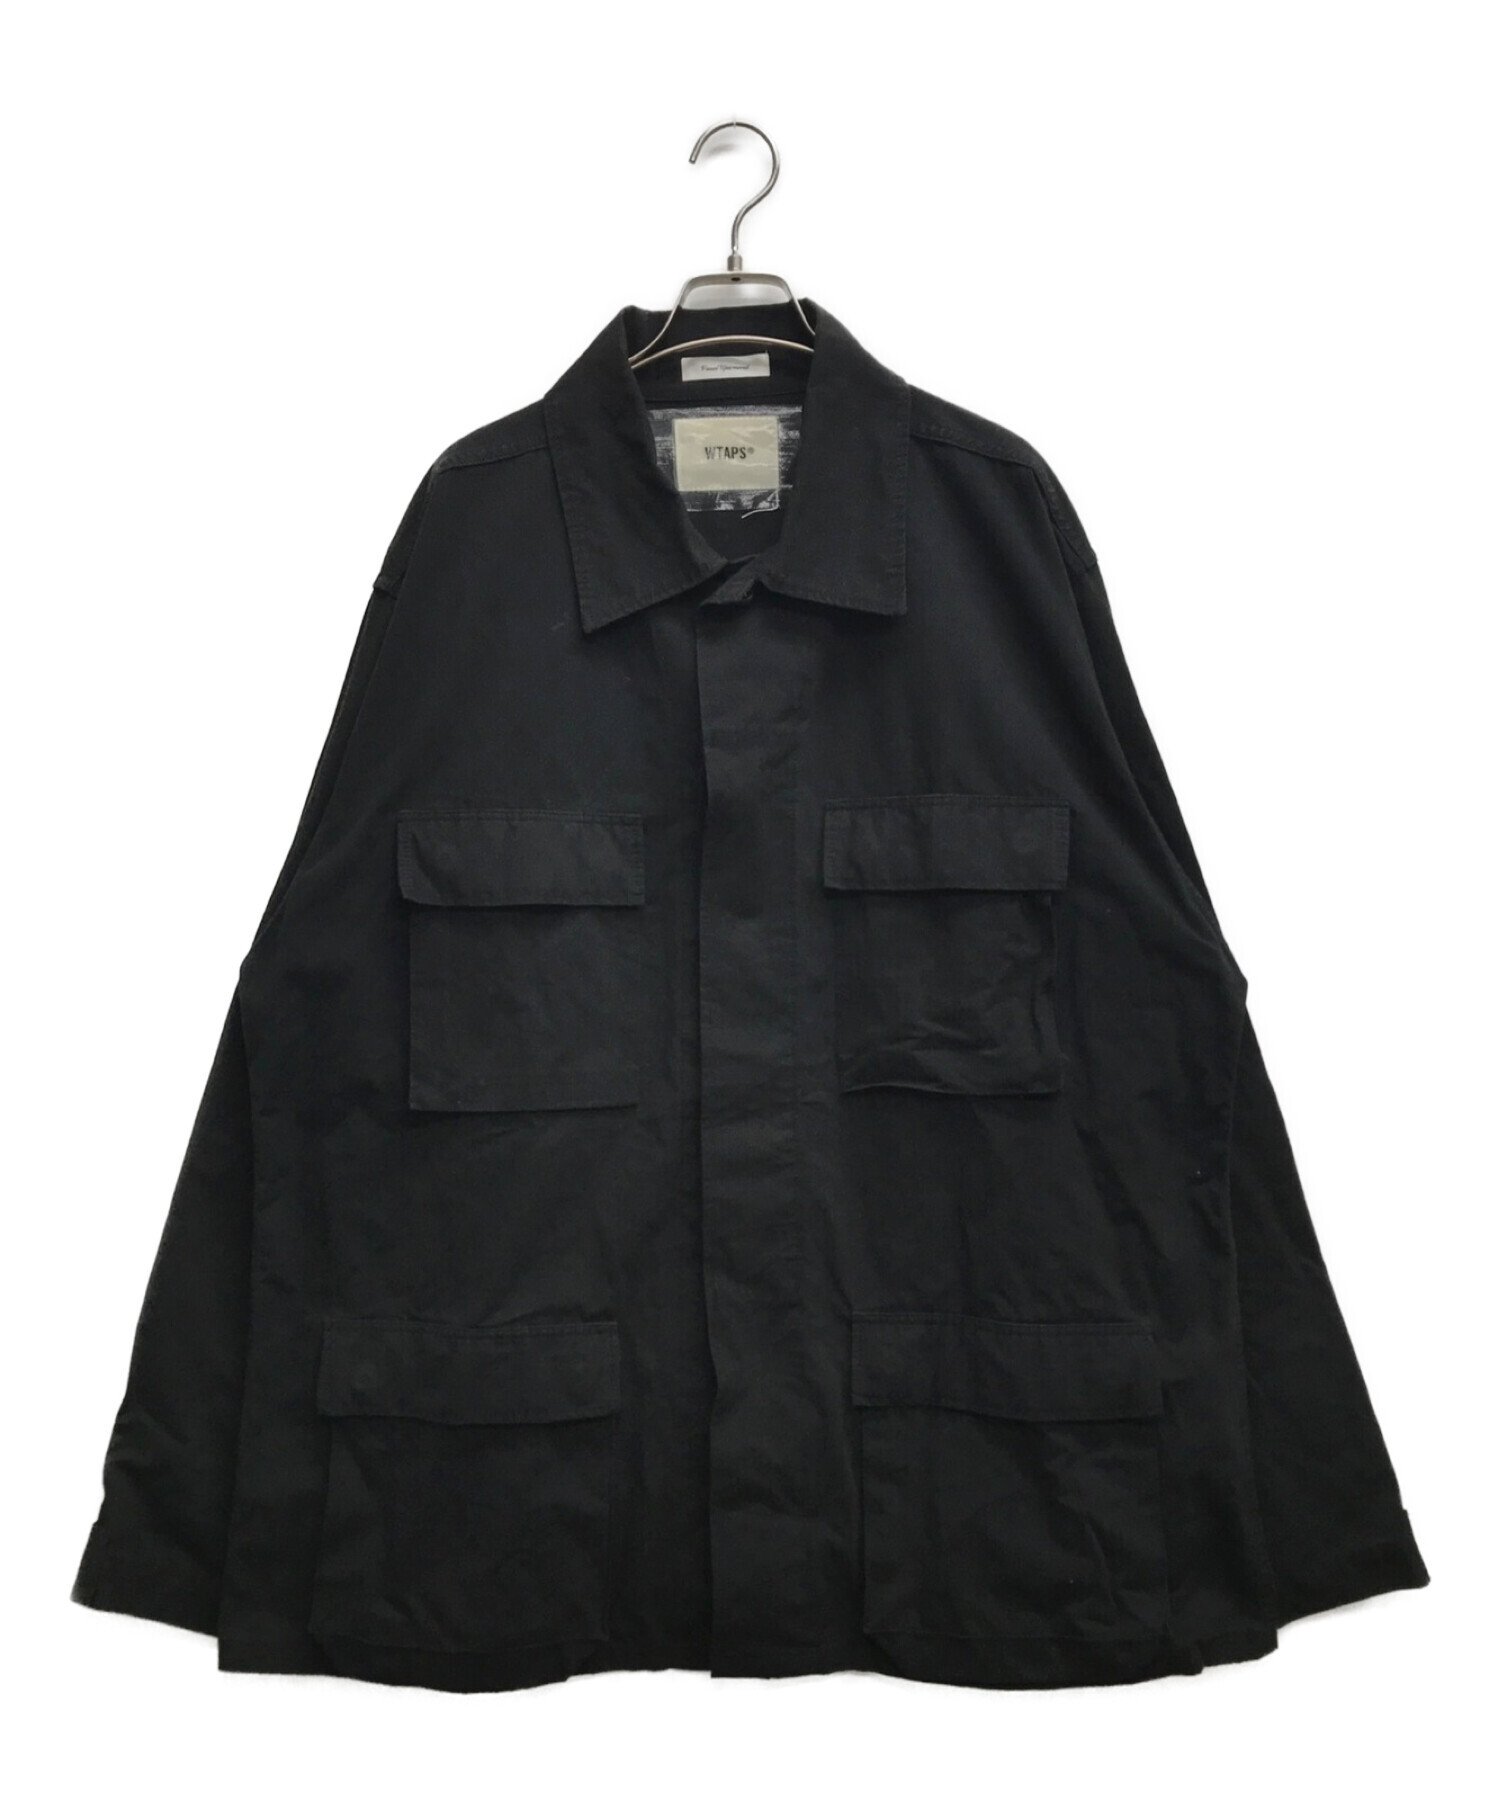 WTAPS (ダブルタップス) リップストップミリタリーシャツ ブラック サイズ:X04